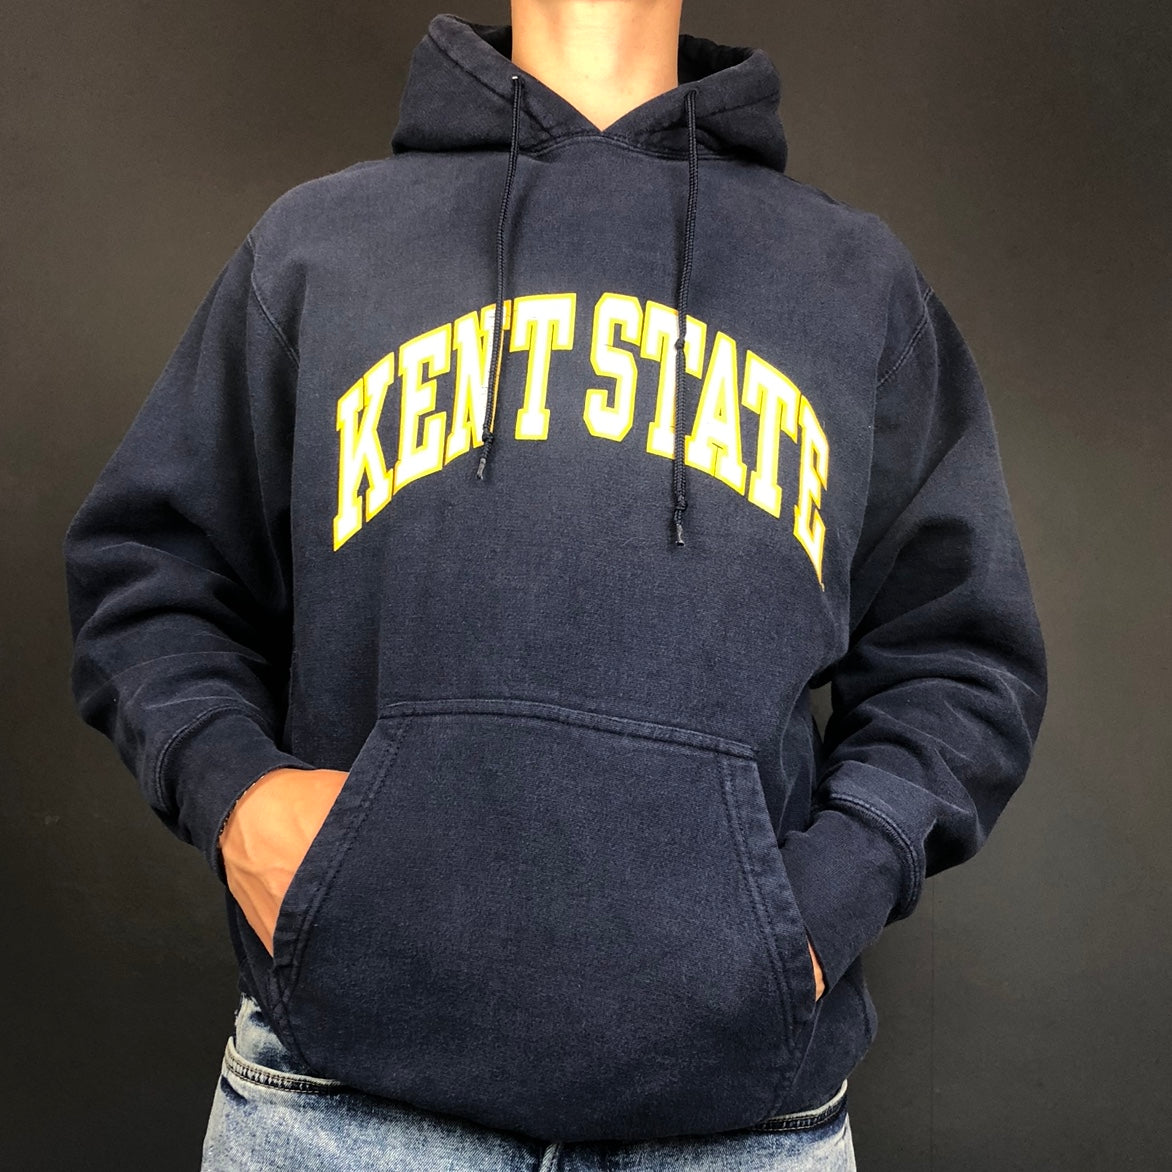 Unbranded Vintage Kent State Sweatshirt - Medium